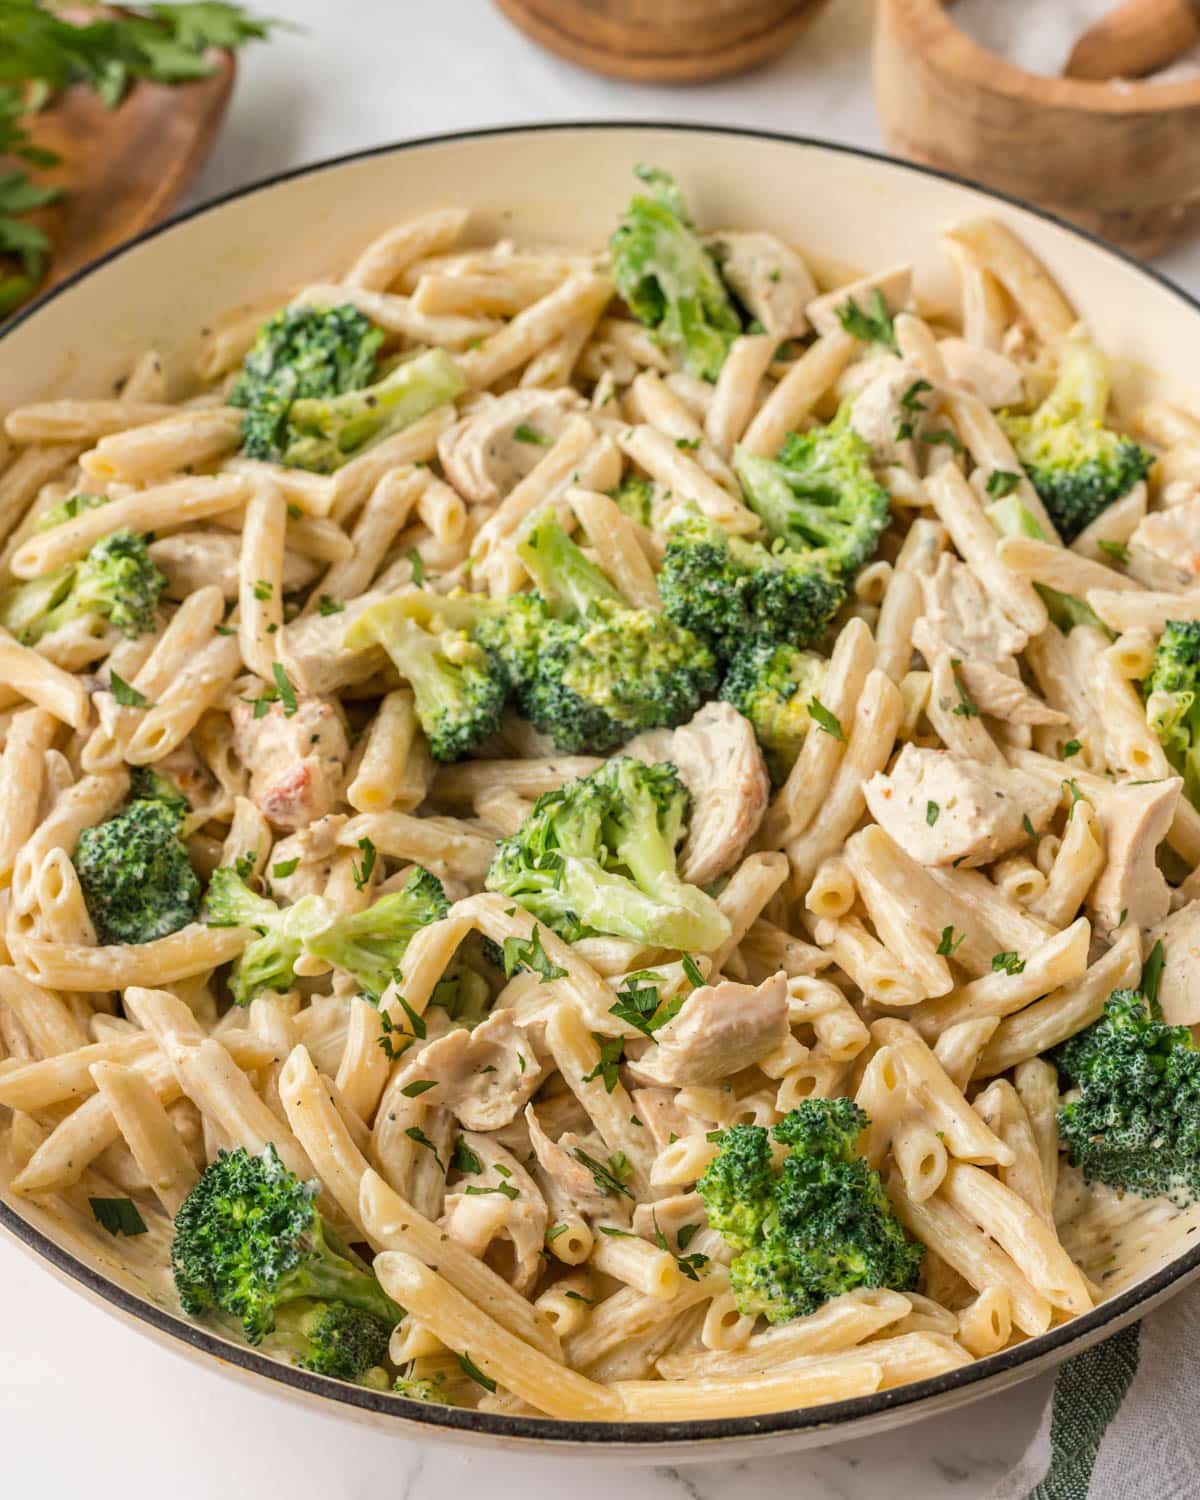 cream chicken and broccoli pasta in a skillet